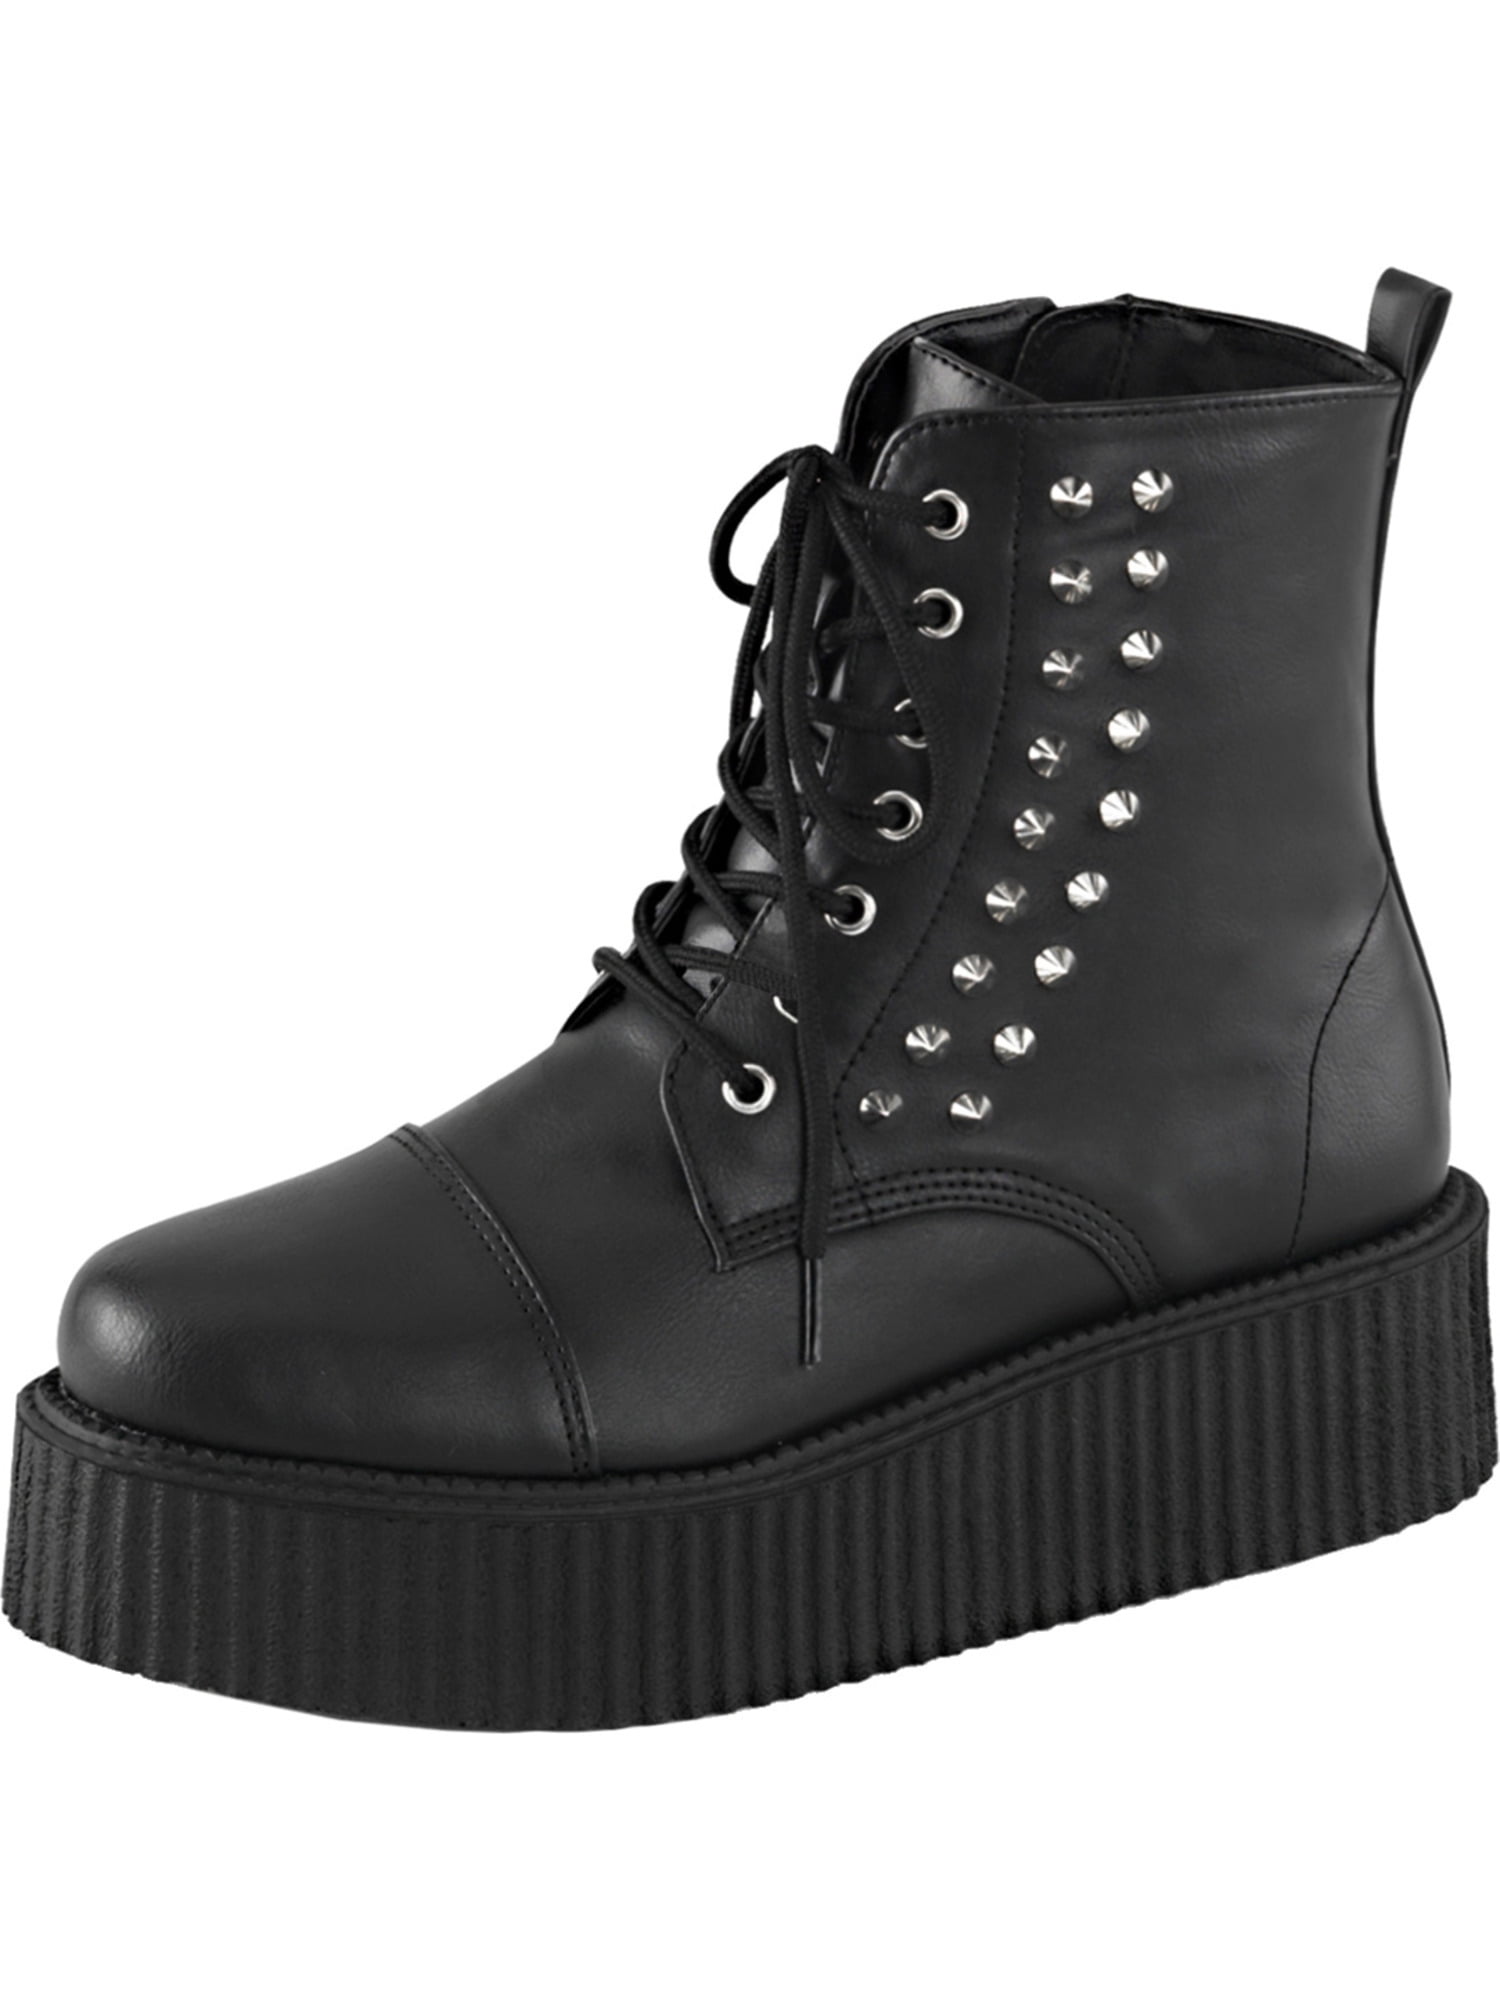 black goth boots mens